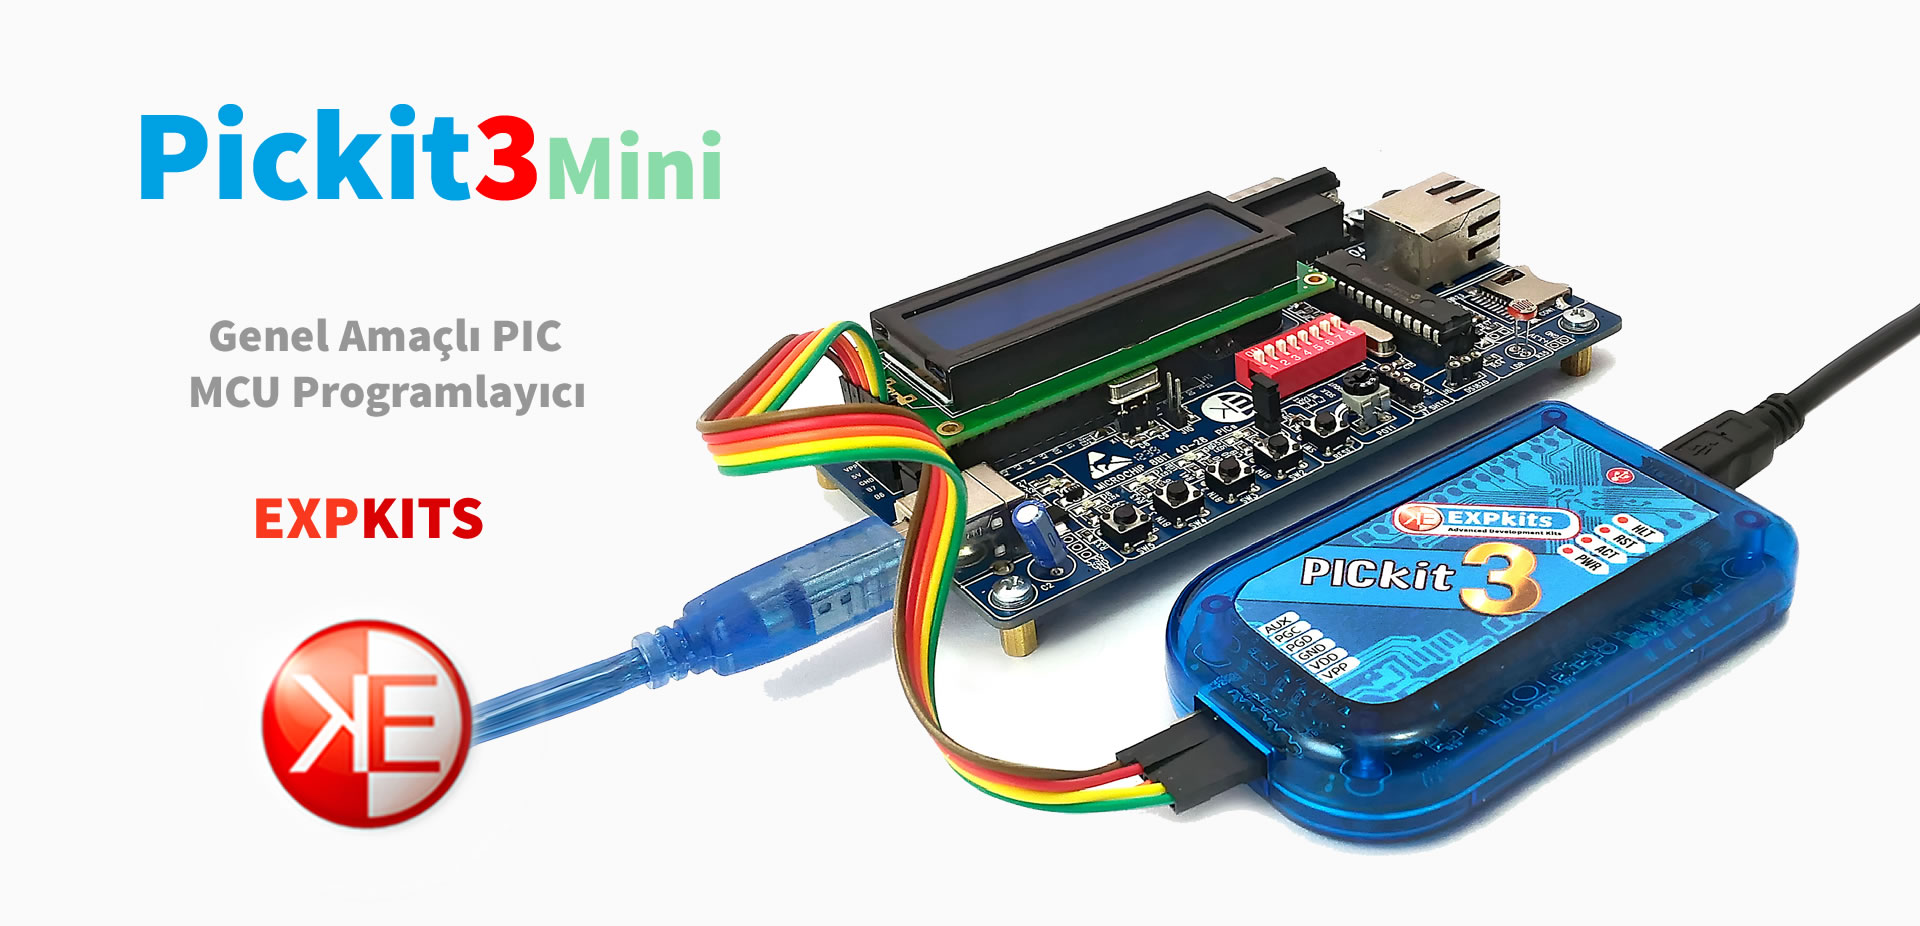 Expkits, Pickit3 Mini Clone, Plastik USB Kutu, Orjinalin %100 aynısı en stabil Pickit3 klonu, ABS ve Polikarbon Malzeme